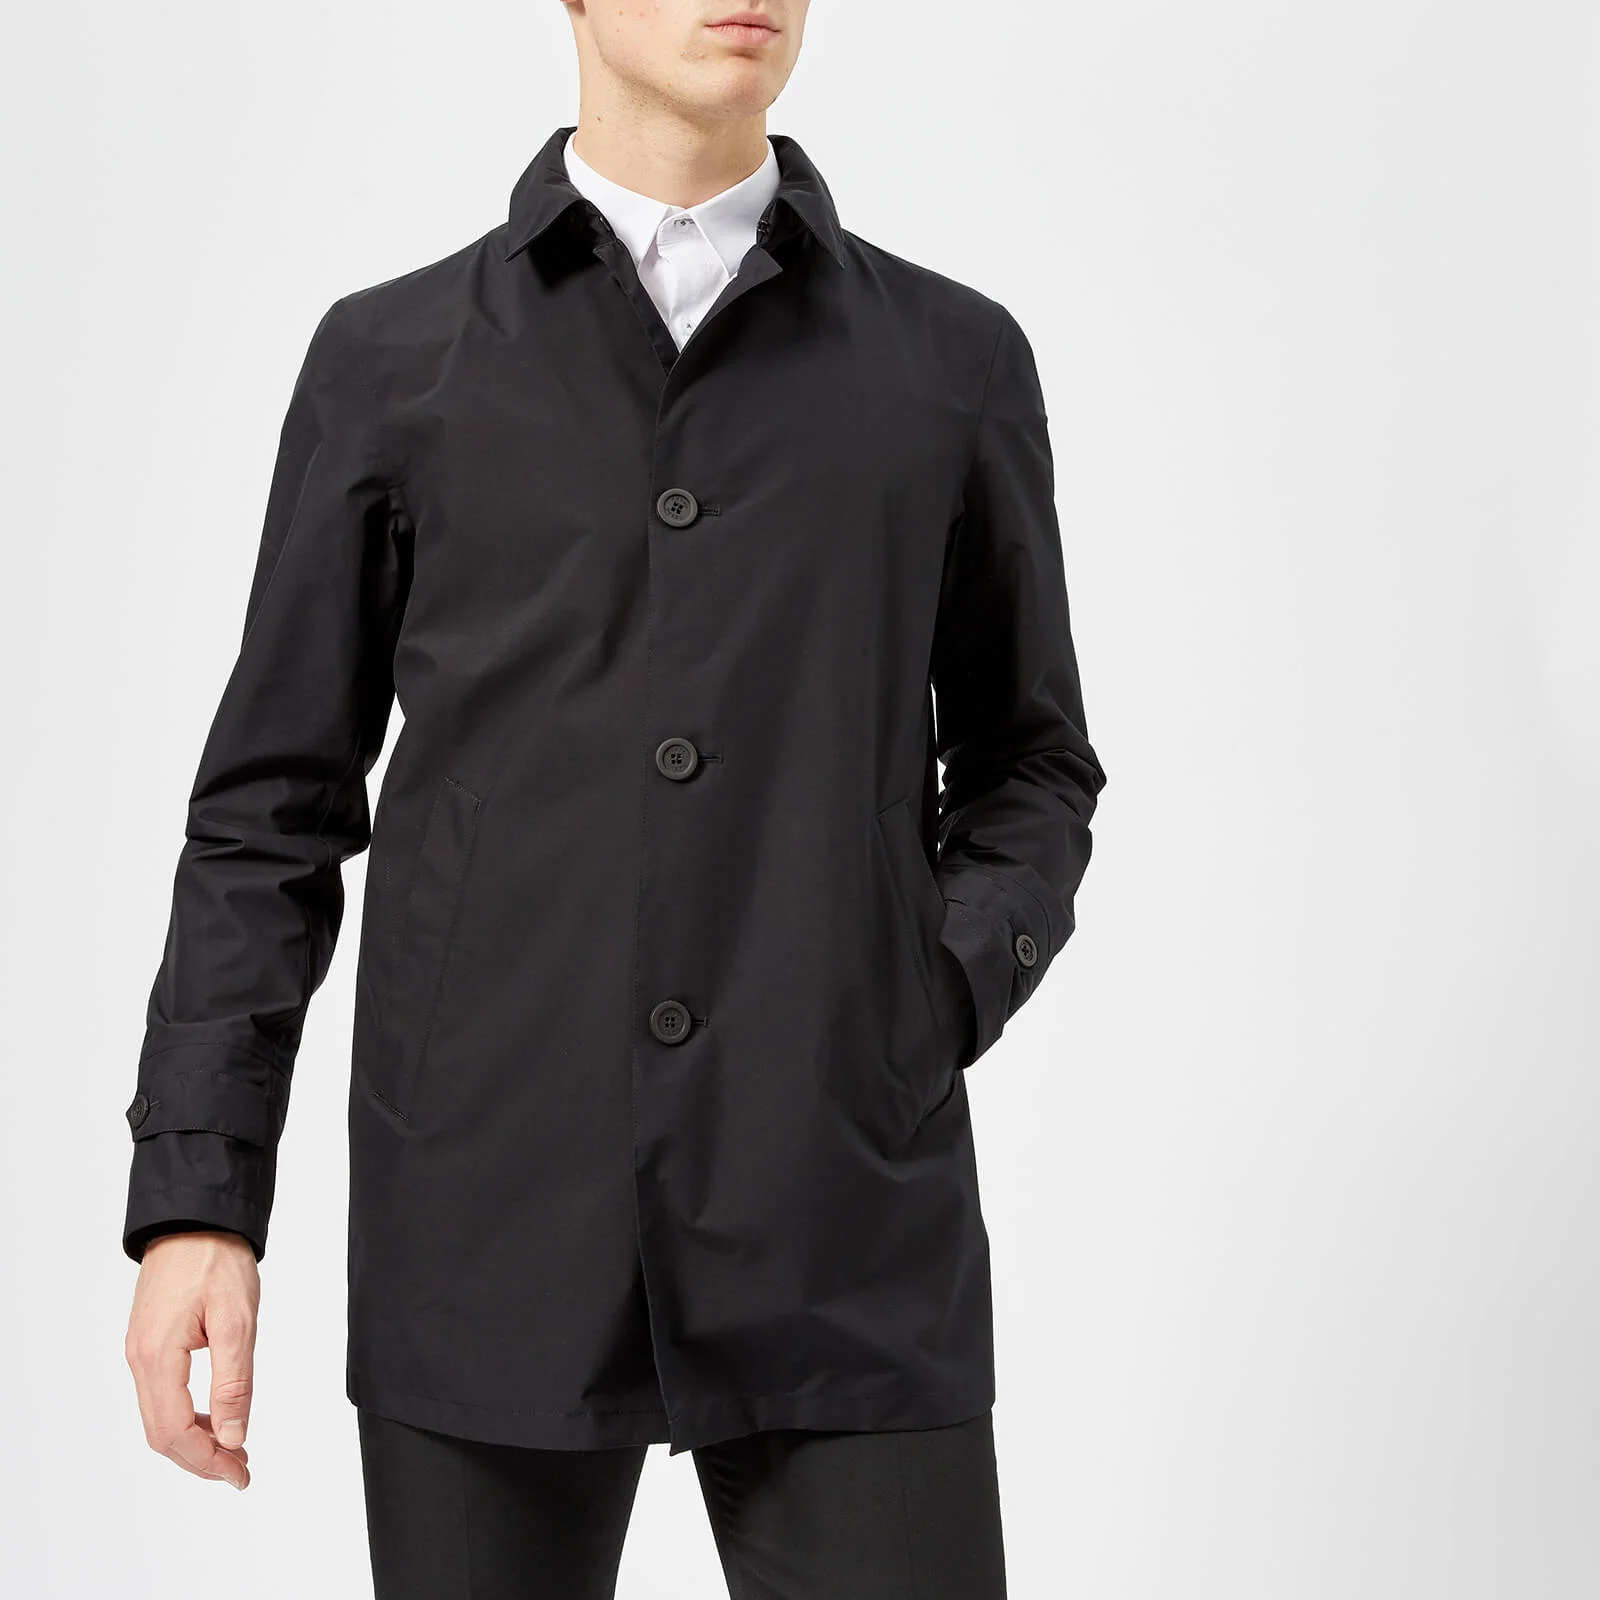 Herno Men's Laminar 2 Layer GORE-TEX Jacket - Black Image 1